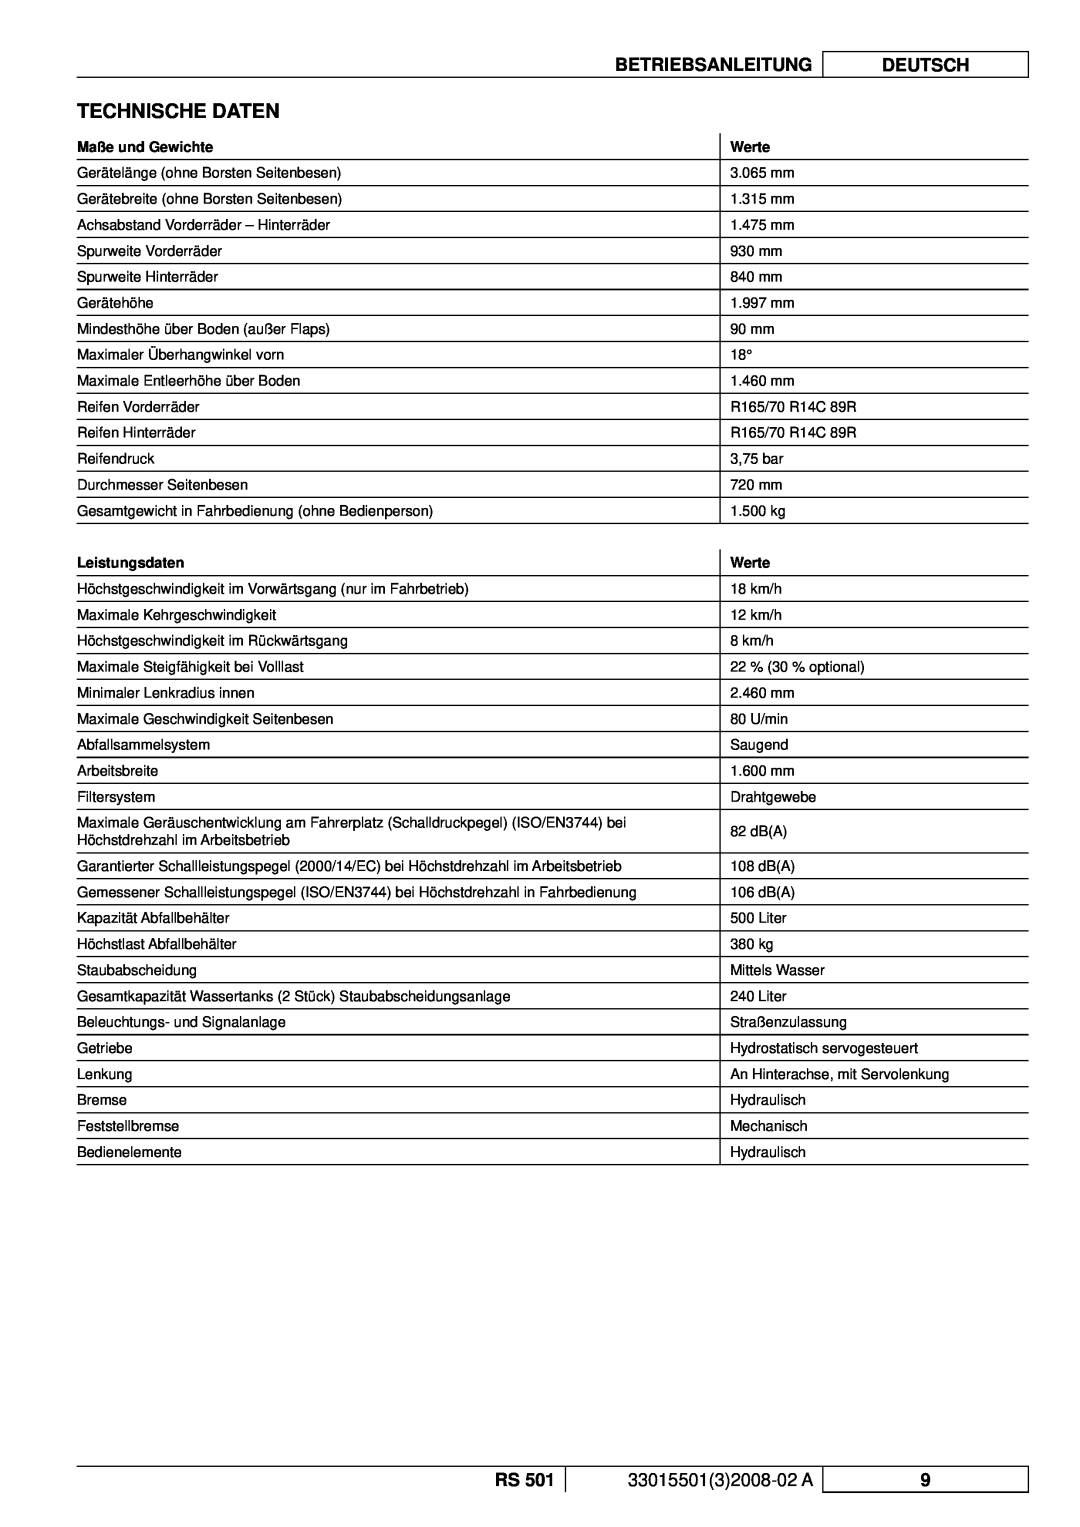 Nilfisk-ALTO RS 501 manuel dutilisation Technische Daten, Betriebsanleitung, Deutsch, 3301550132008-02A 